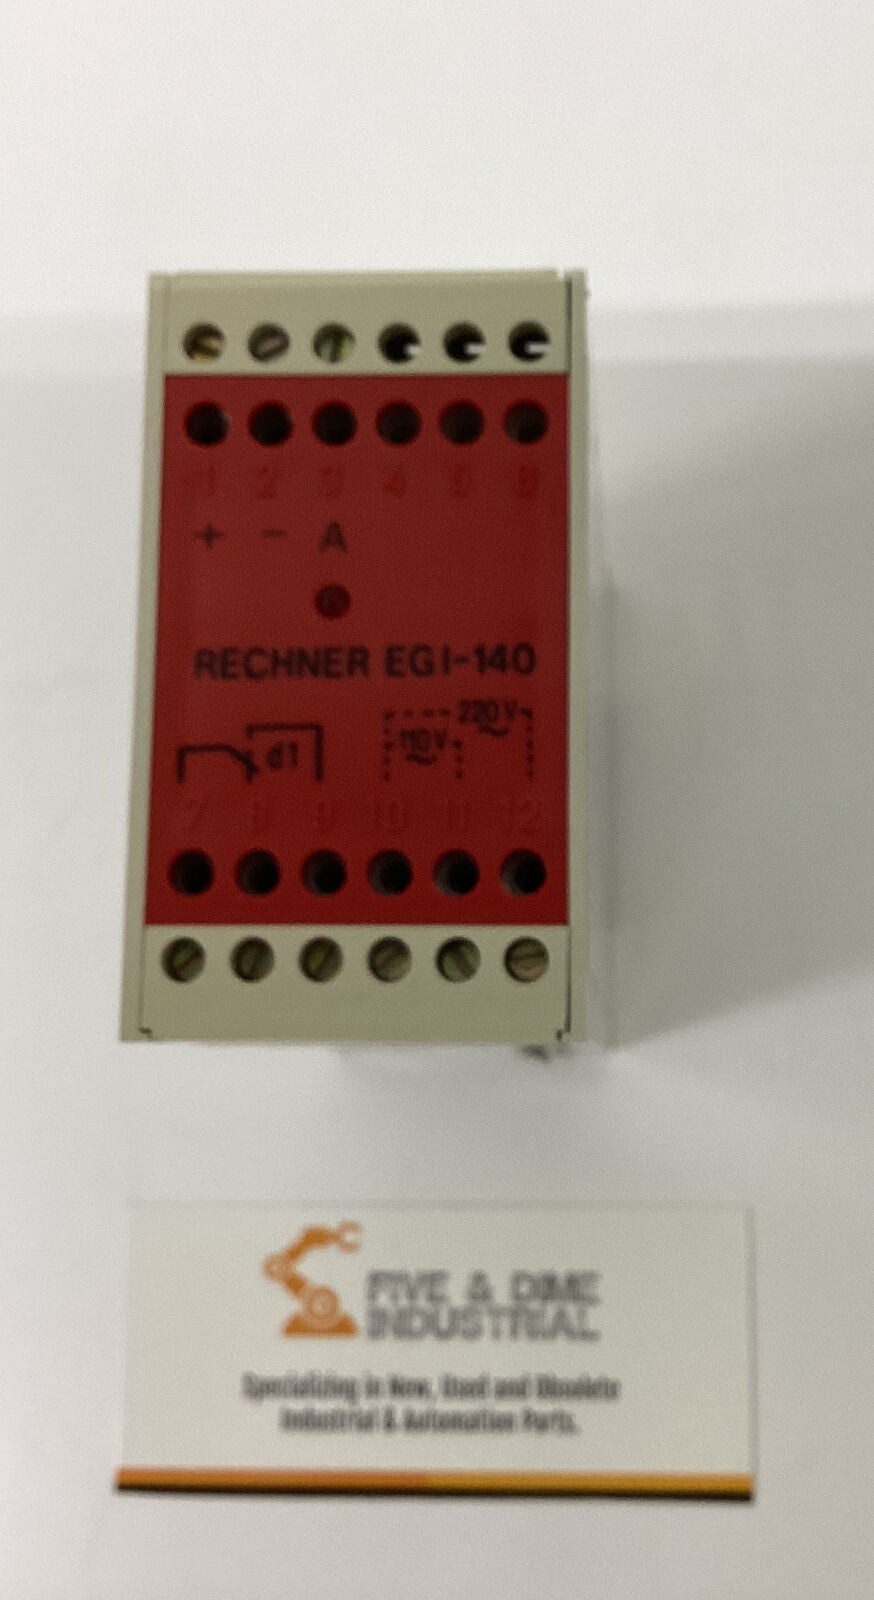 Recher  EGI-140 Safety Relay 110/220V (YE143)